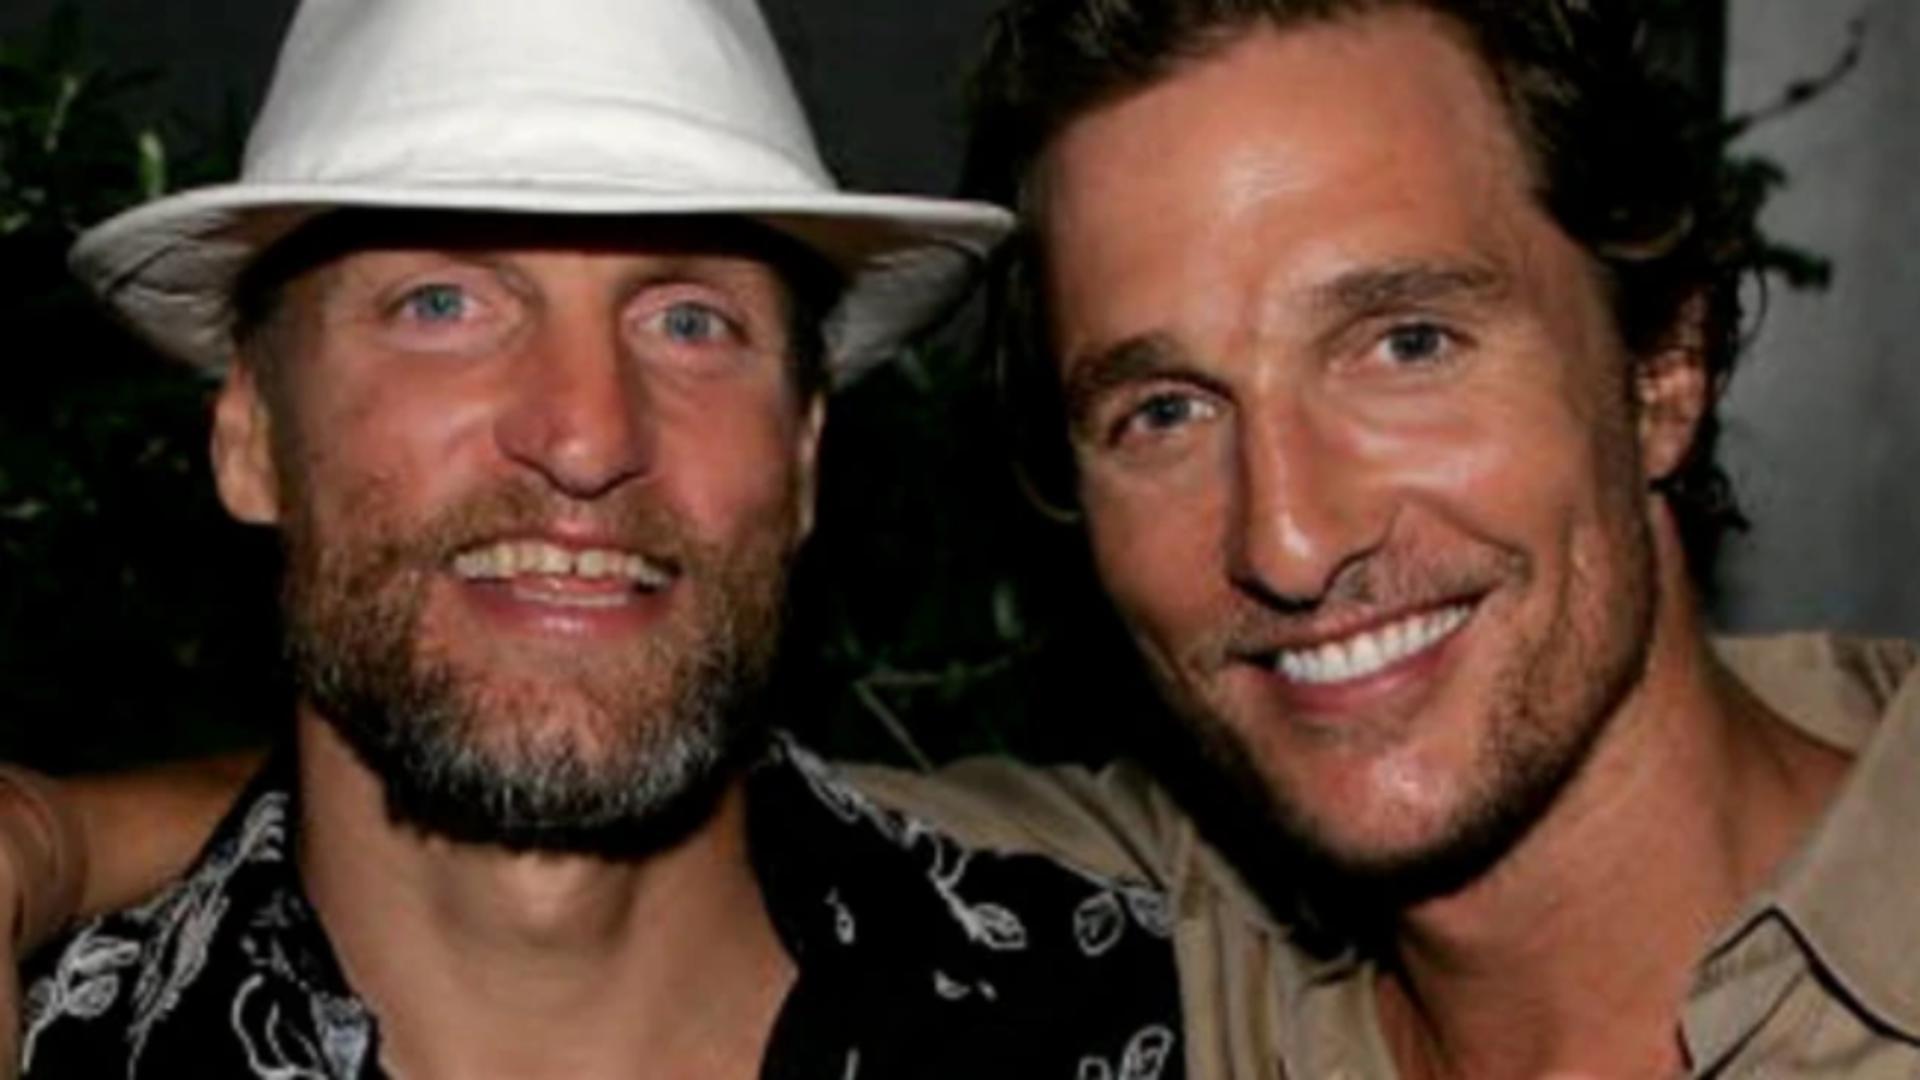 Viața bate filmul - Doi actori celebri de la Hollywood află că ar putea fi frați, după 20 de ani de strânsă prietenie